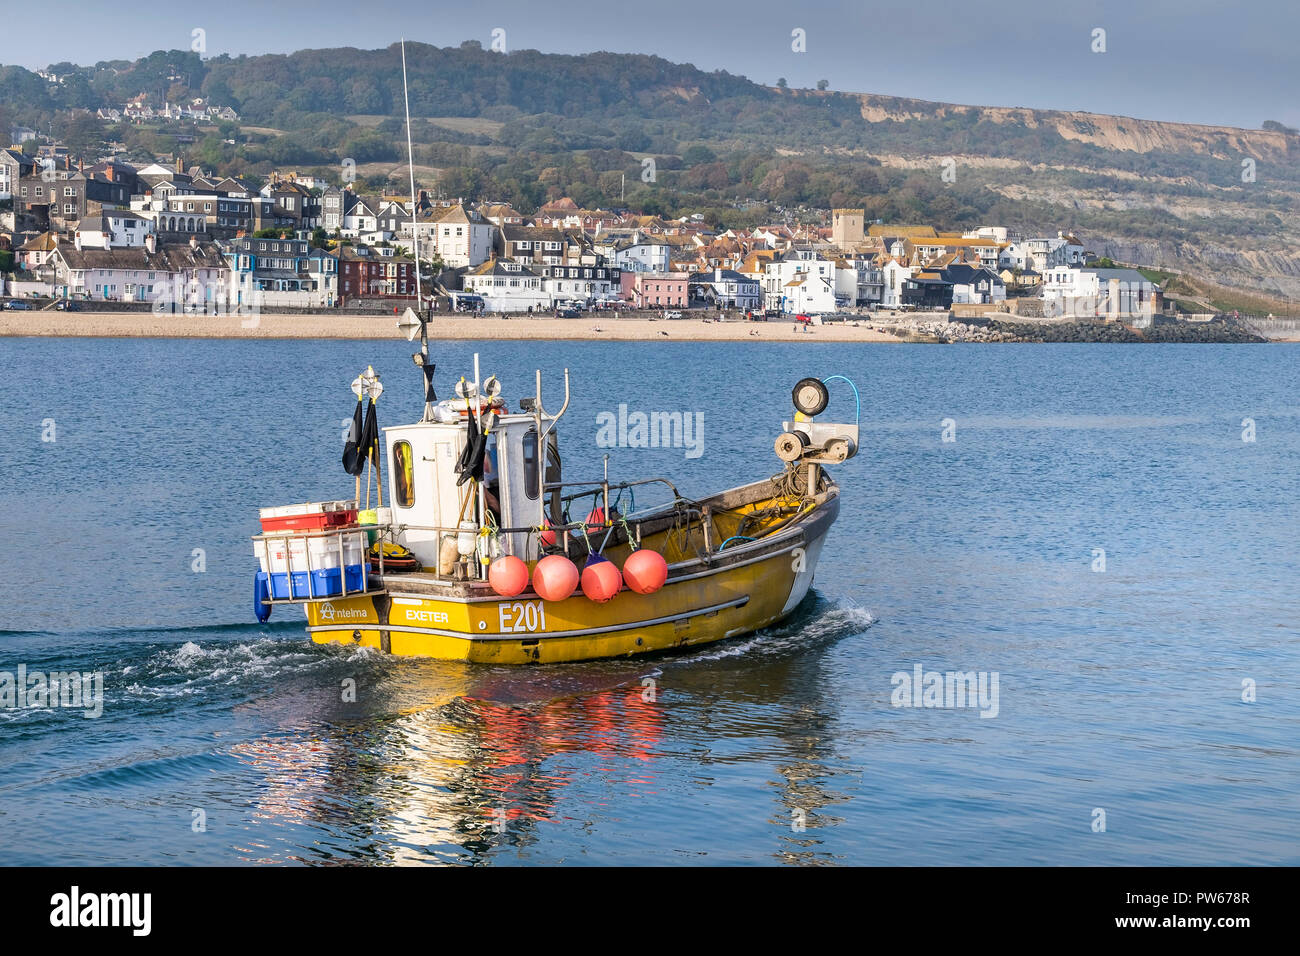 Un petit bateau de pêche E201 de quitter le port de Lyme à Lyme Regis dans le Dorset. Banque D'Images